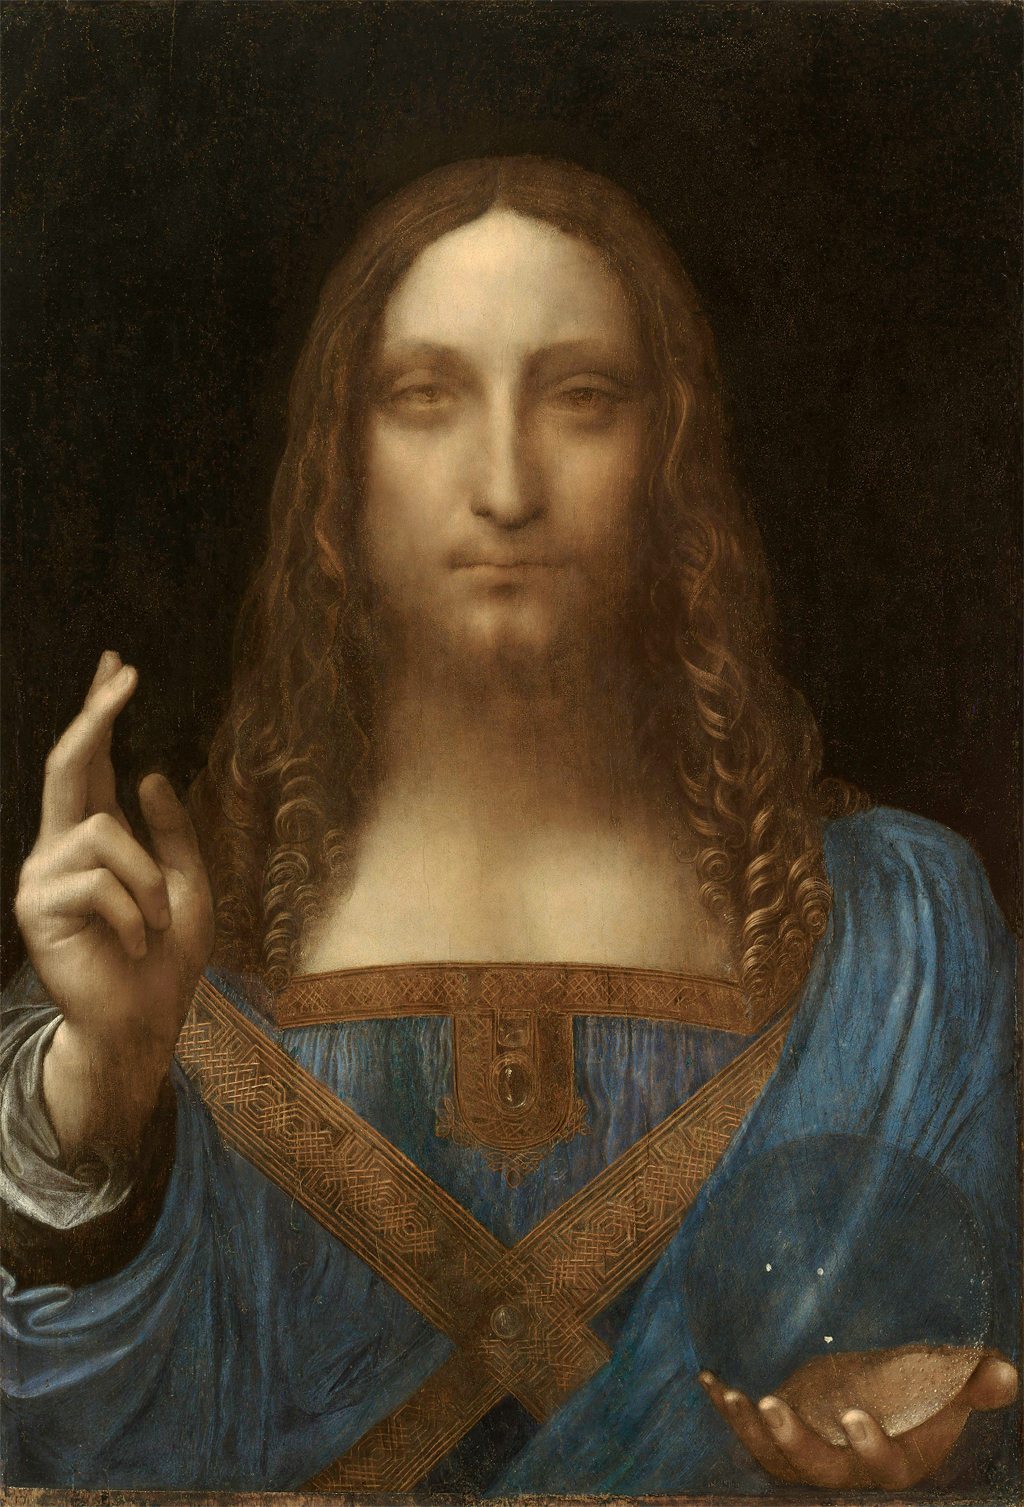 Salvator Mundi, attributed to Leonardo da Vinci